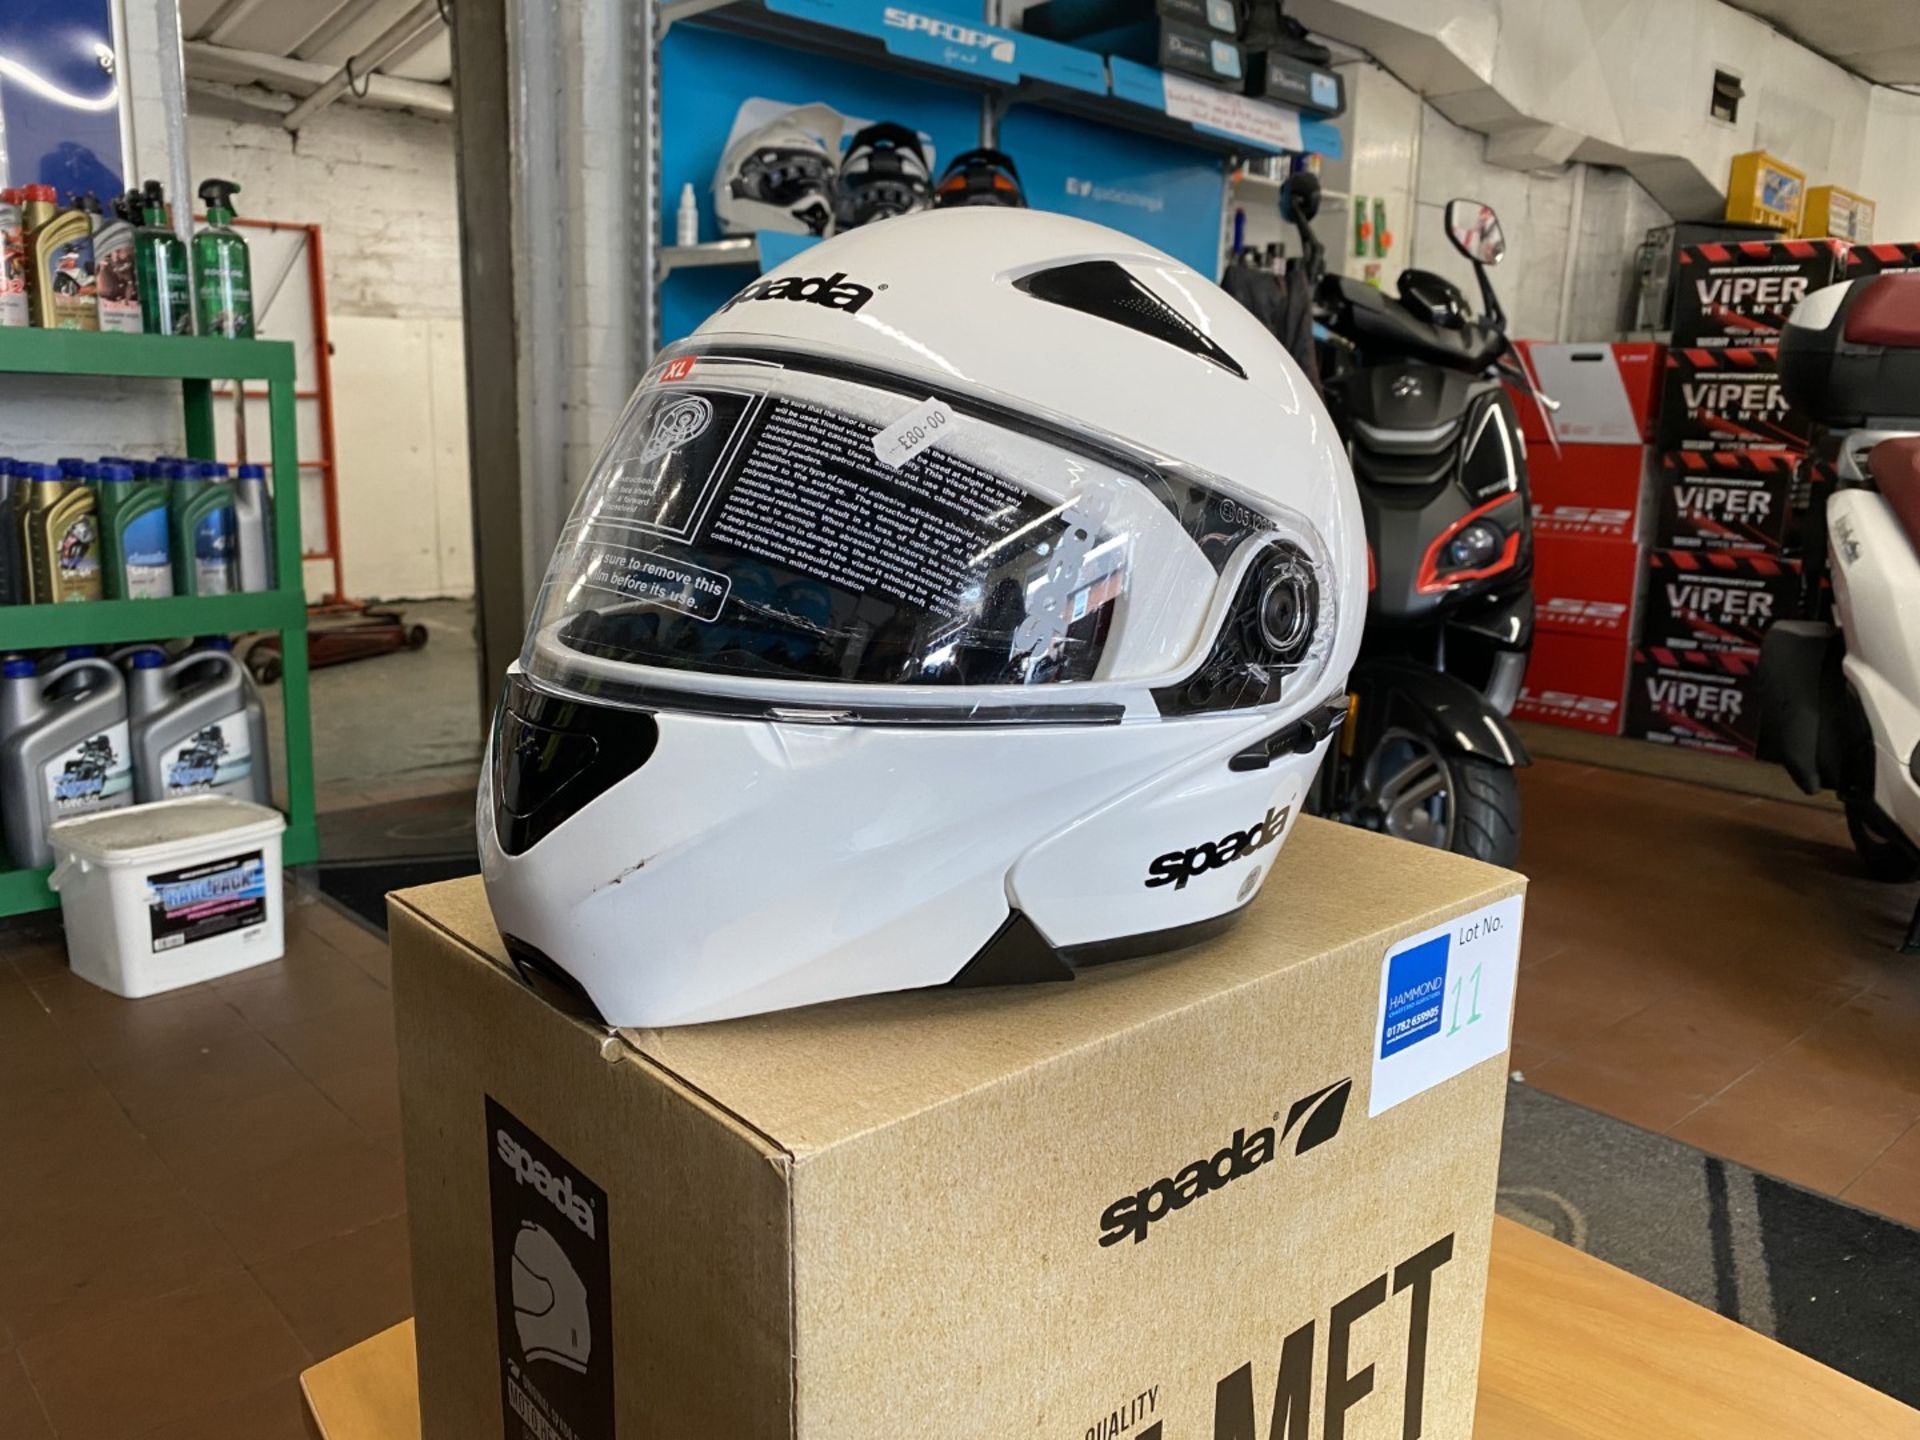 Spada Reveal White X-Large Helmet - Moto Headwear - Motorcycle / Motorbike Helmet - RRP £80.00 - Image 2 of 5